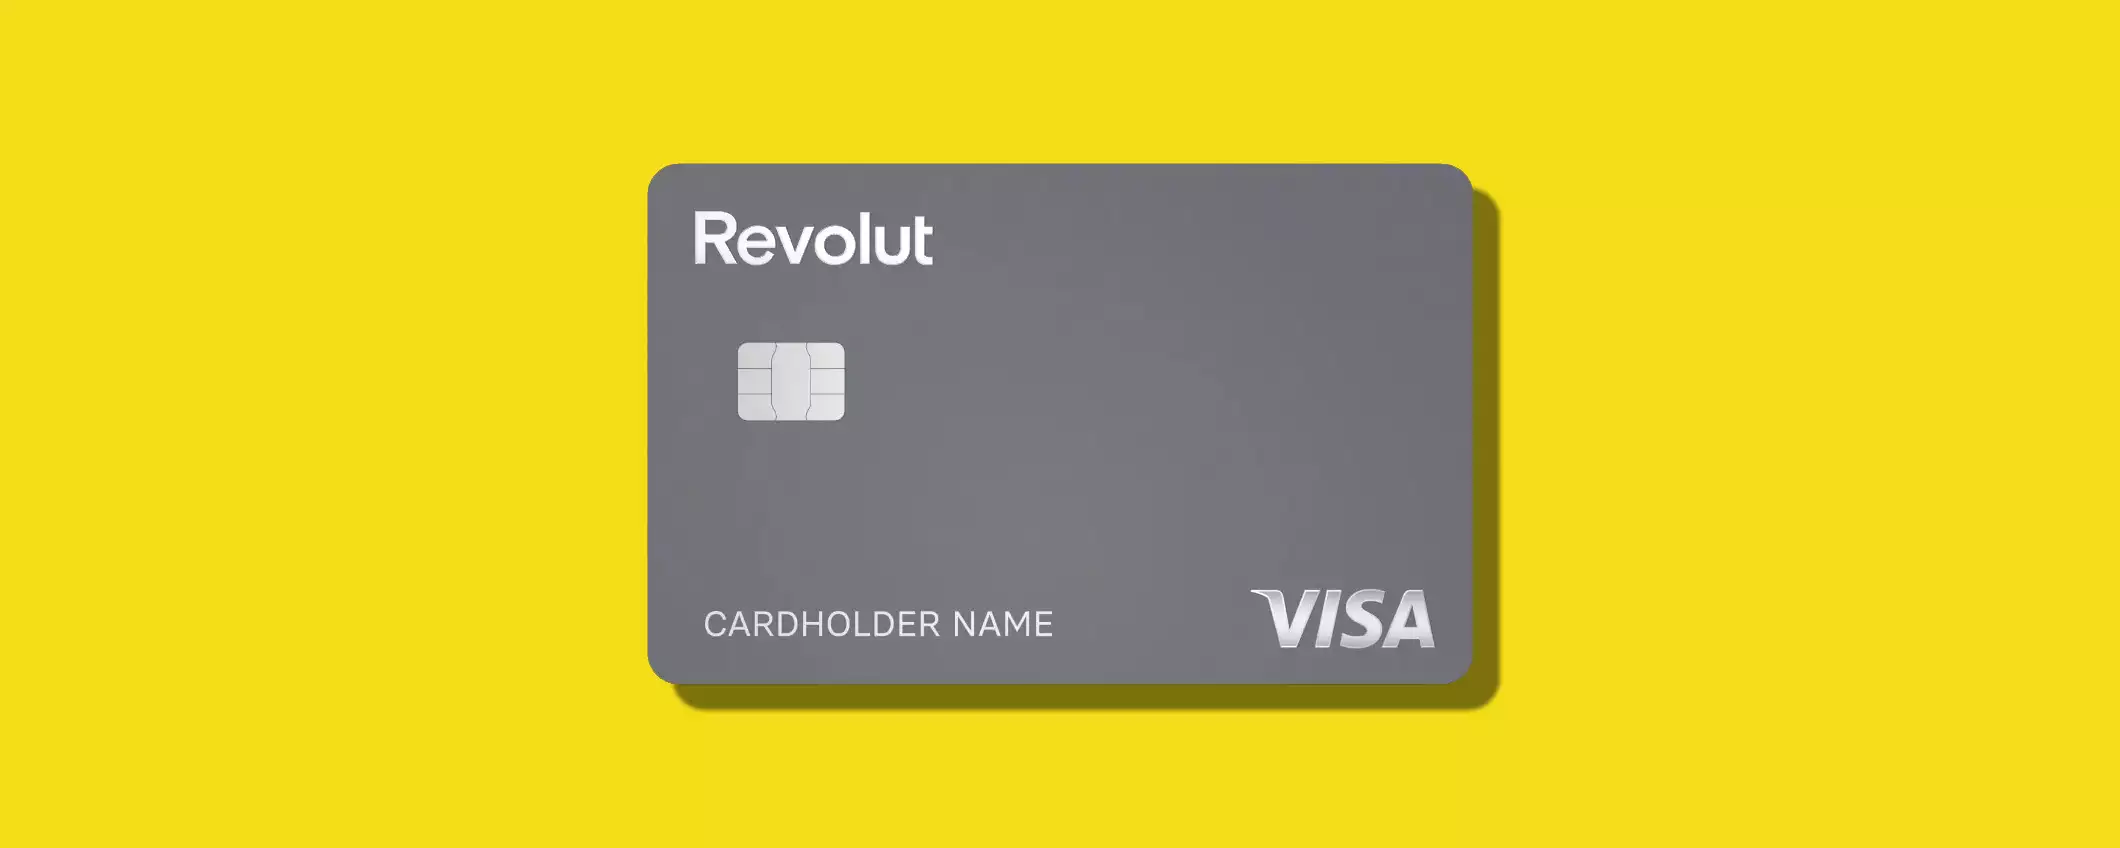 Nuovi clienti Revolut: piano Premium gratuito per 3 mesi